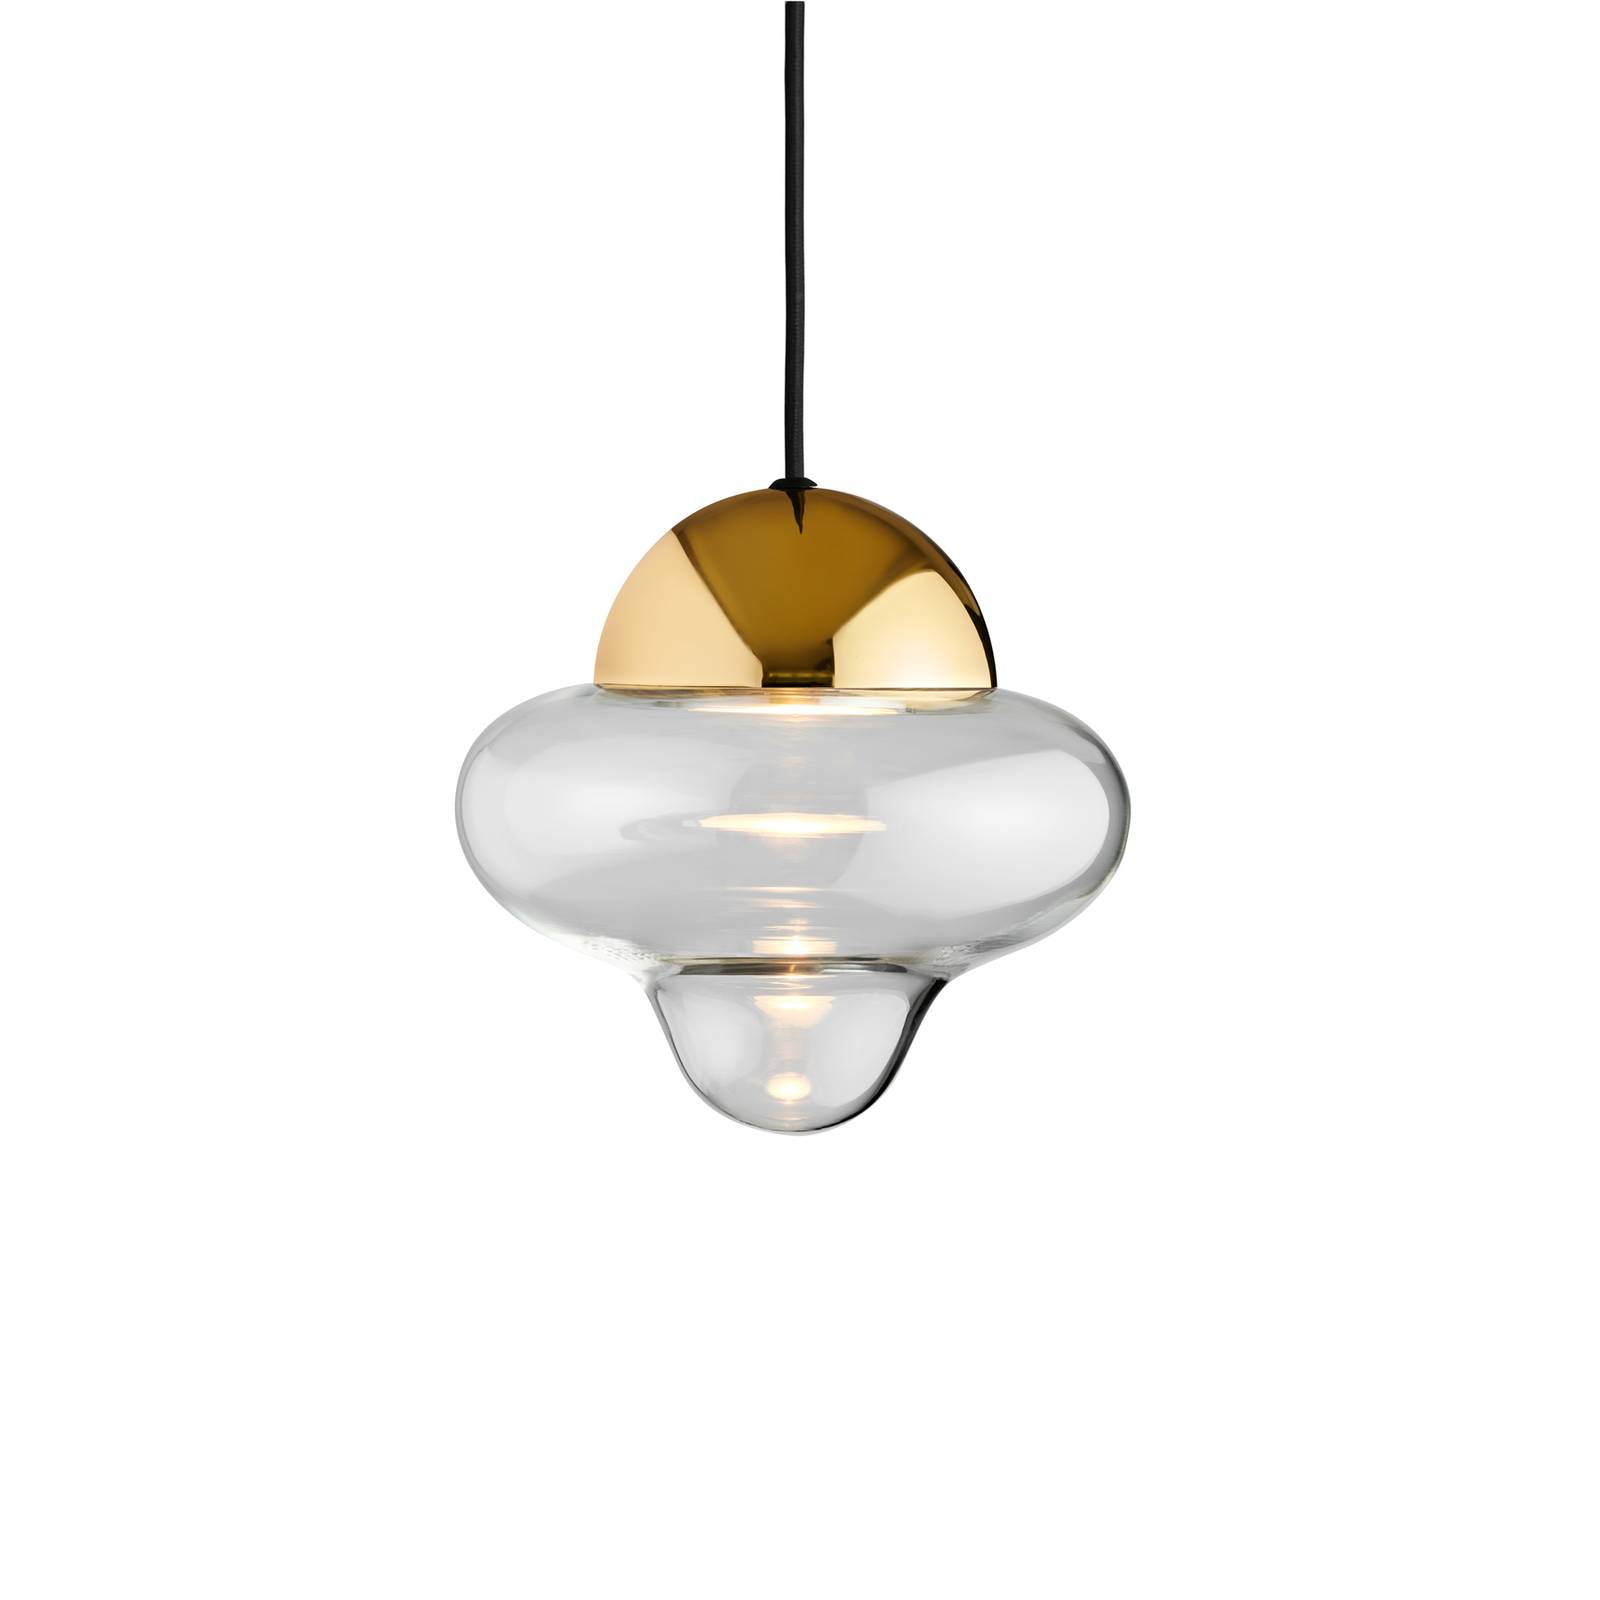 DESIGN BY US Závěsné svítidlo LED Nutty, čirá / zlatá barva, Ø 18,5 cm, sklo